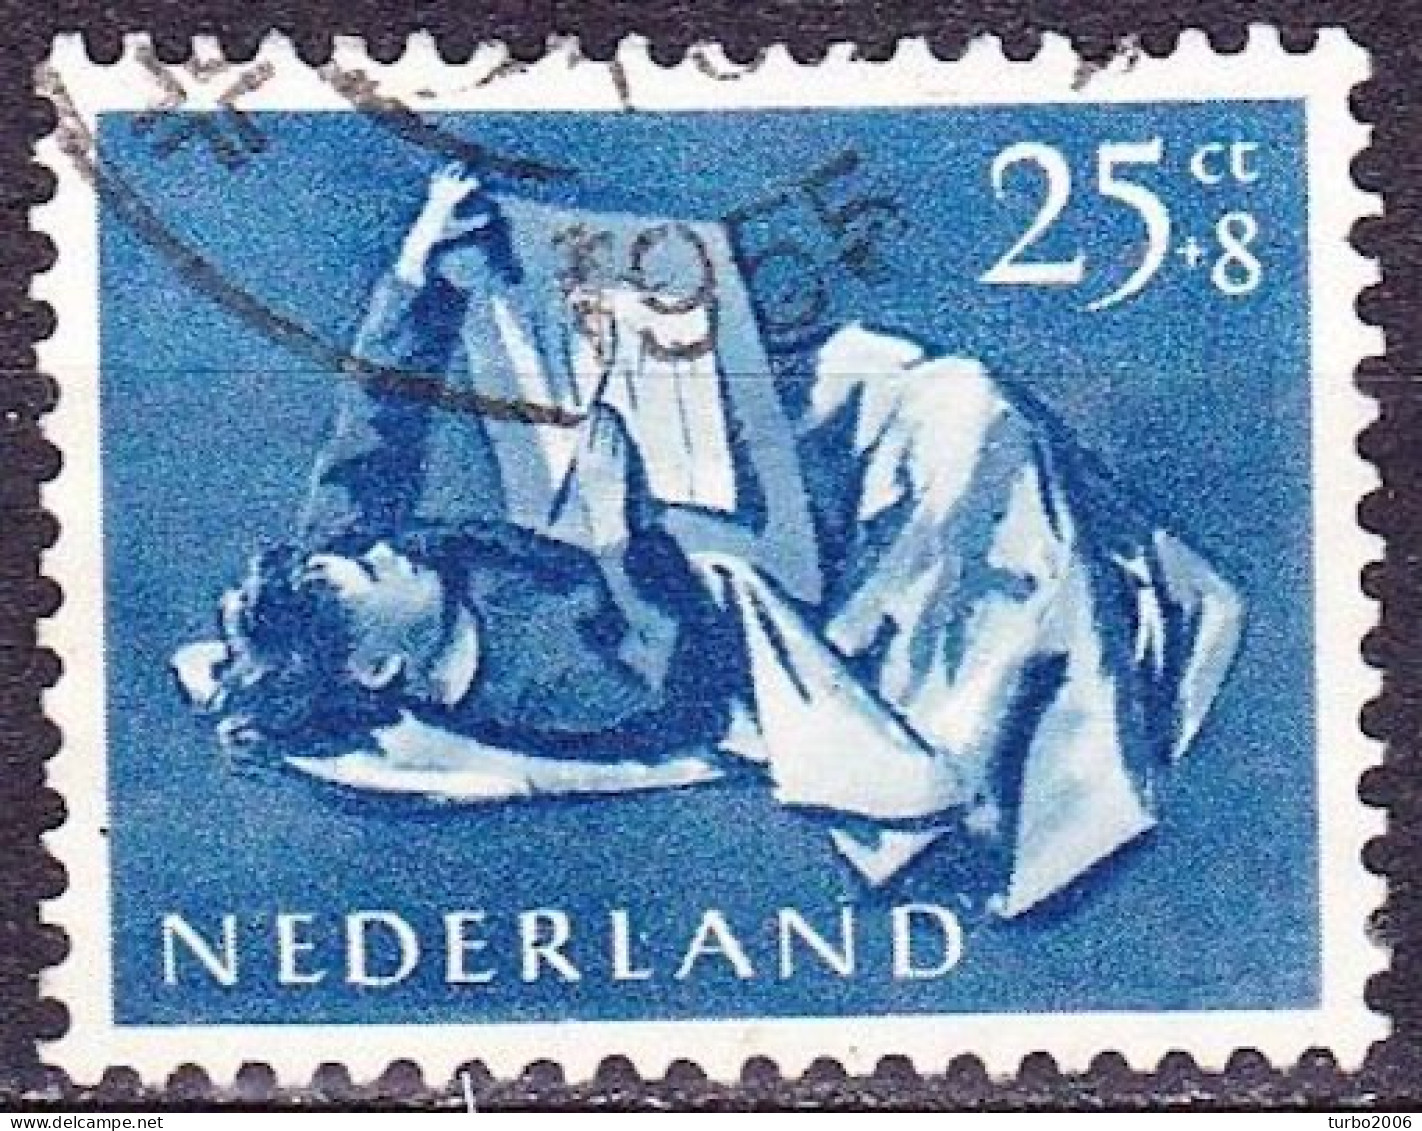 Plaatfout Blauwe Stip In De R Van NedeRland In 1954 Kinderzegels 25 + 8 Ct Blauw NVPH 653 PM 2 - Plaatfouten En Curiosa